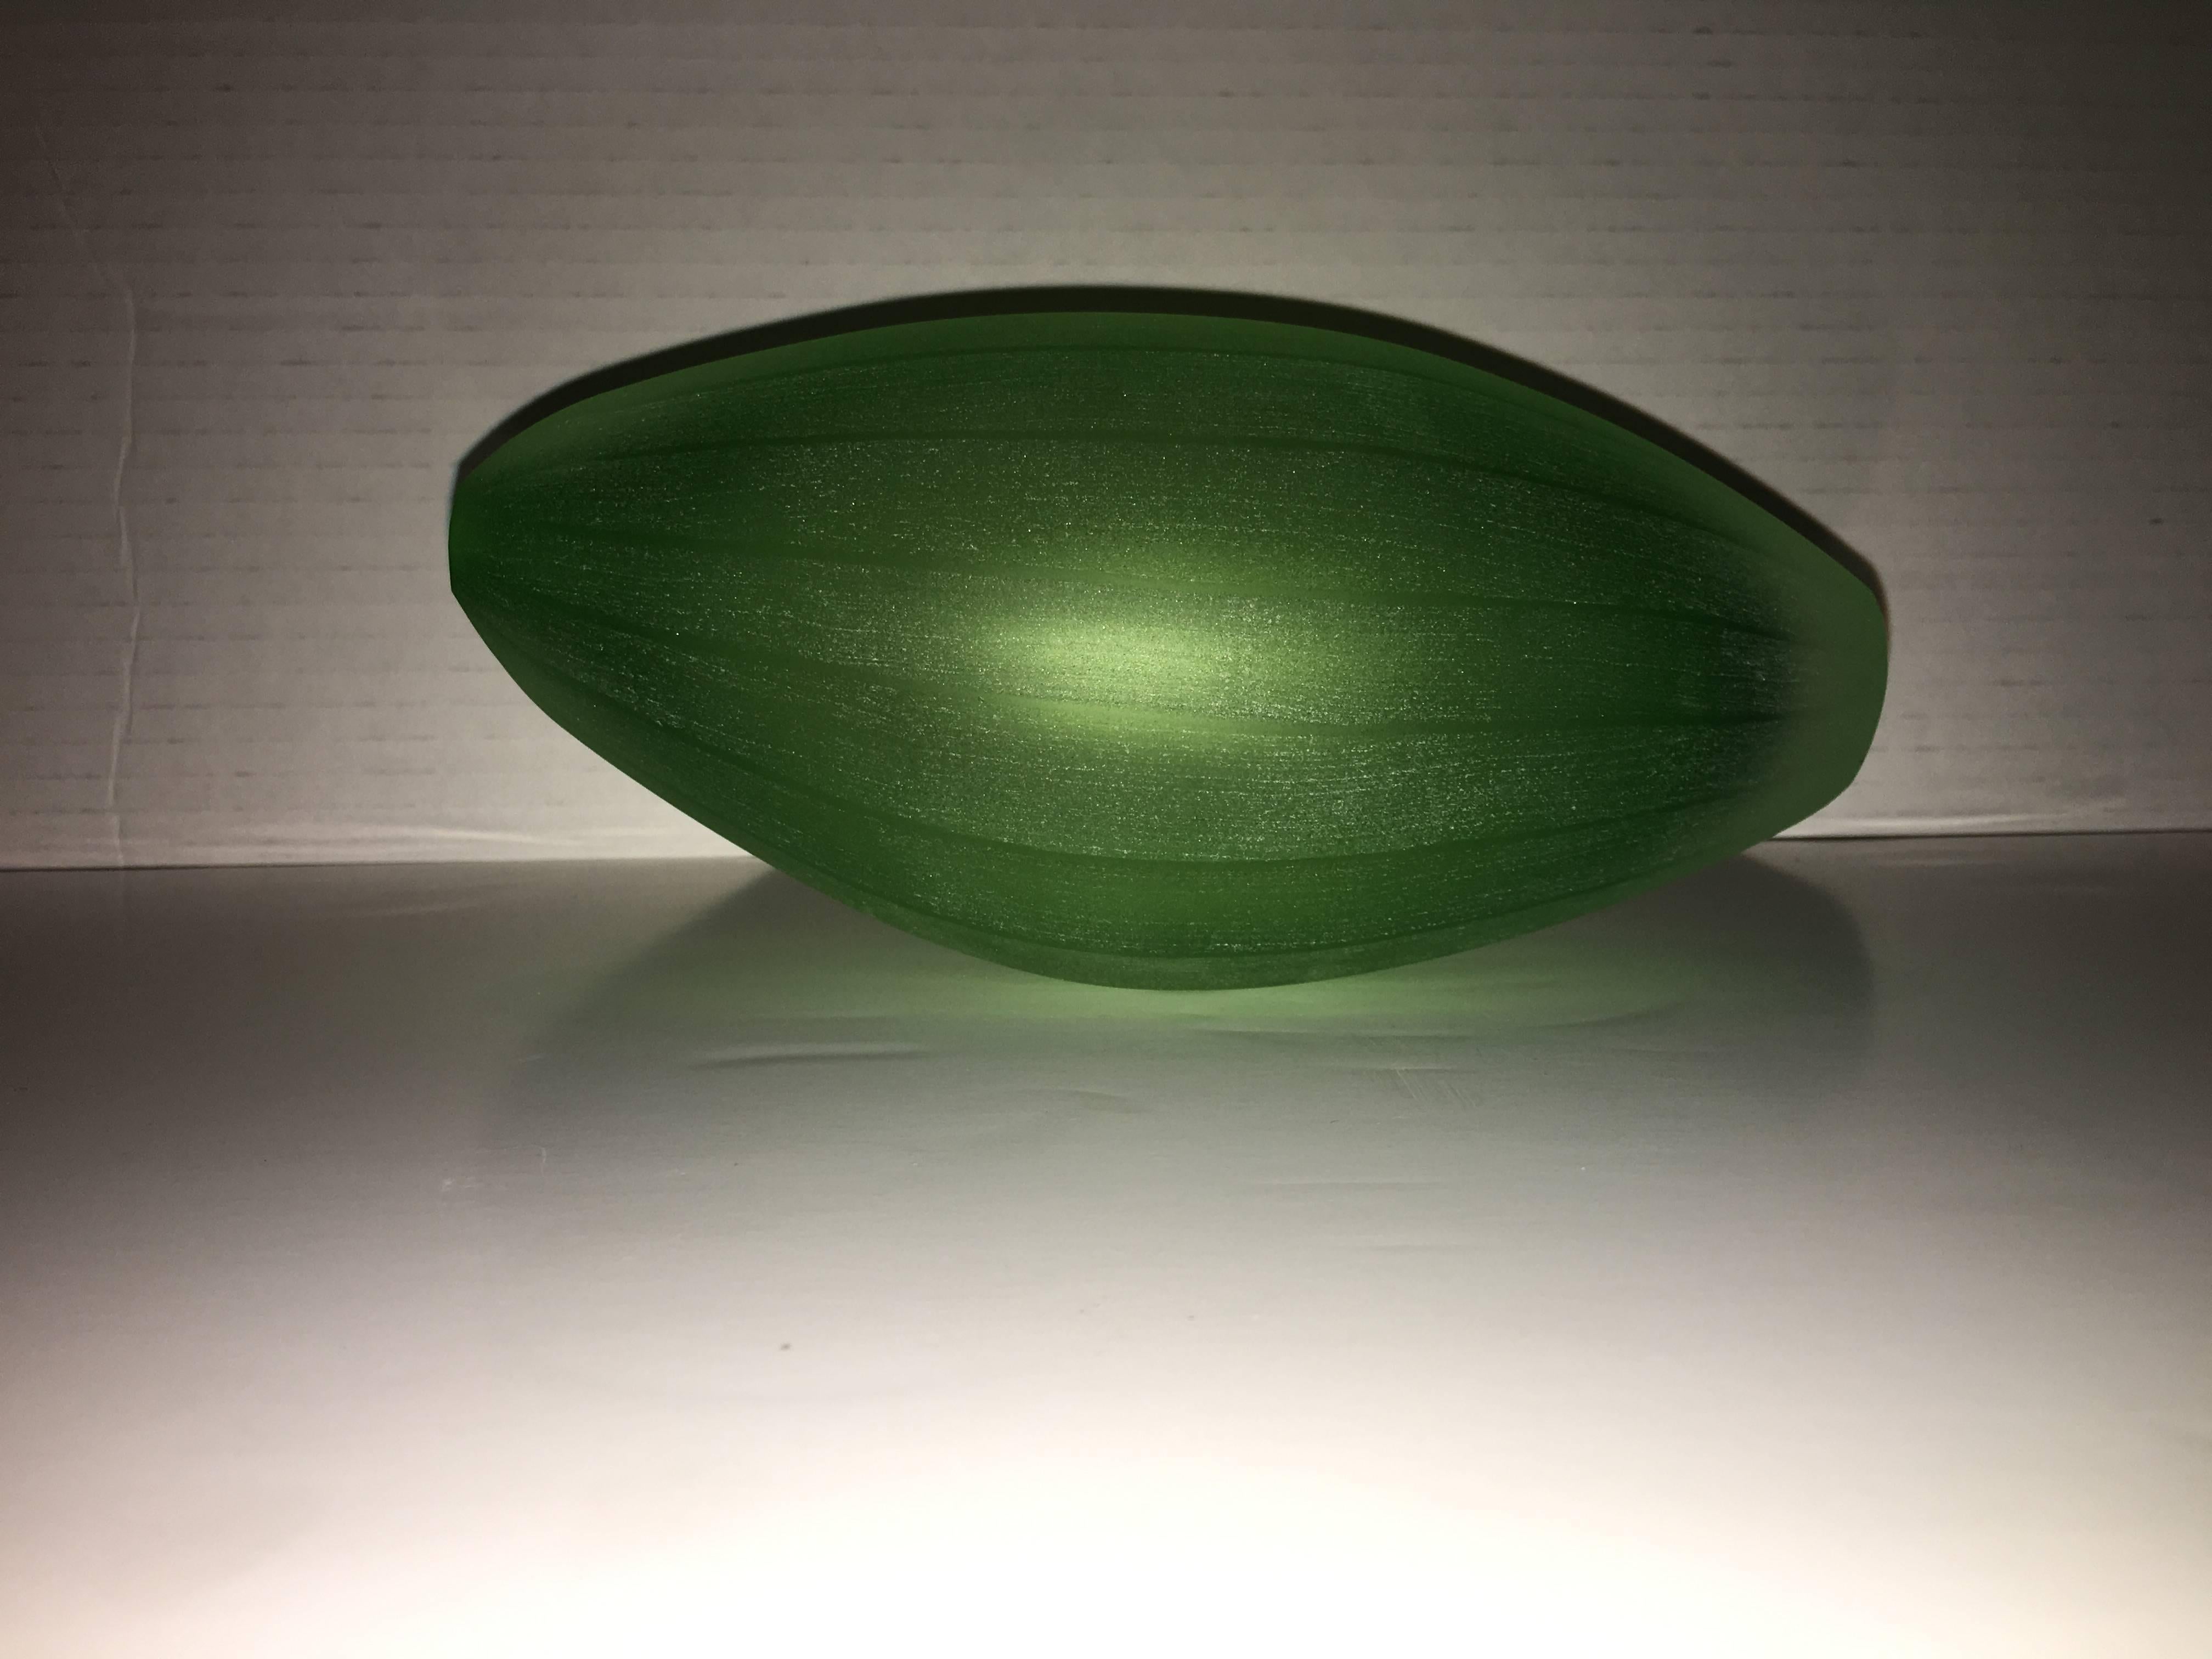 Vase, entworfen von Laura de Santillana in einer Edition für Arcade, 2001. Sie gehört zu einer Serie von Vasen, die von tropischen Früchten und Pflanzenformen inspiriert sind und die gleiche matte, handgravierte Oberfläche haben:
PAPAIA, hergestellt